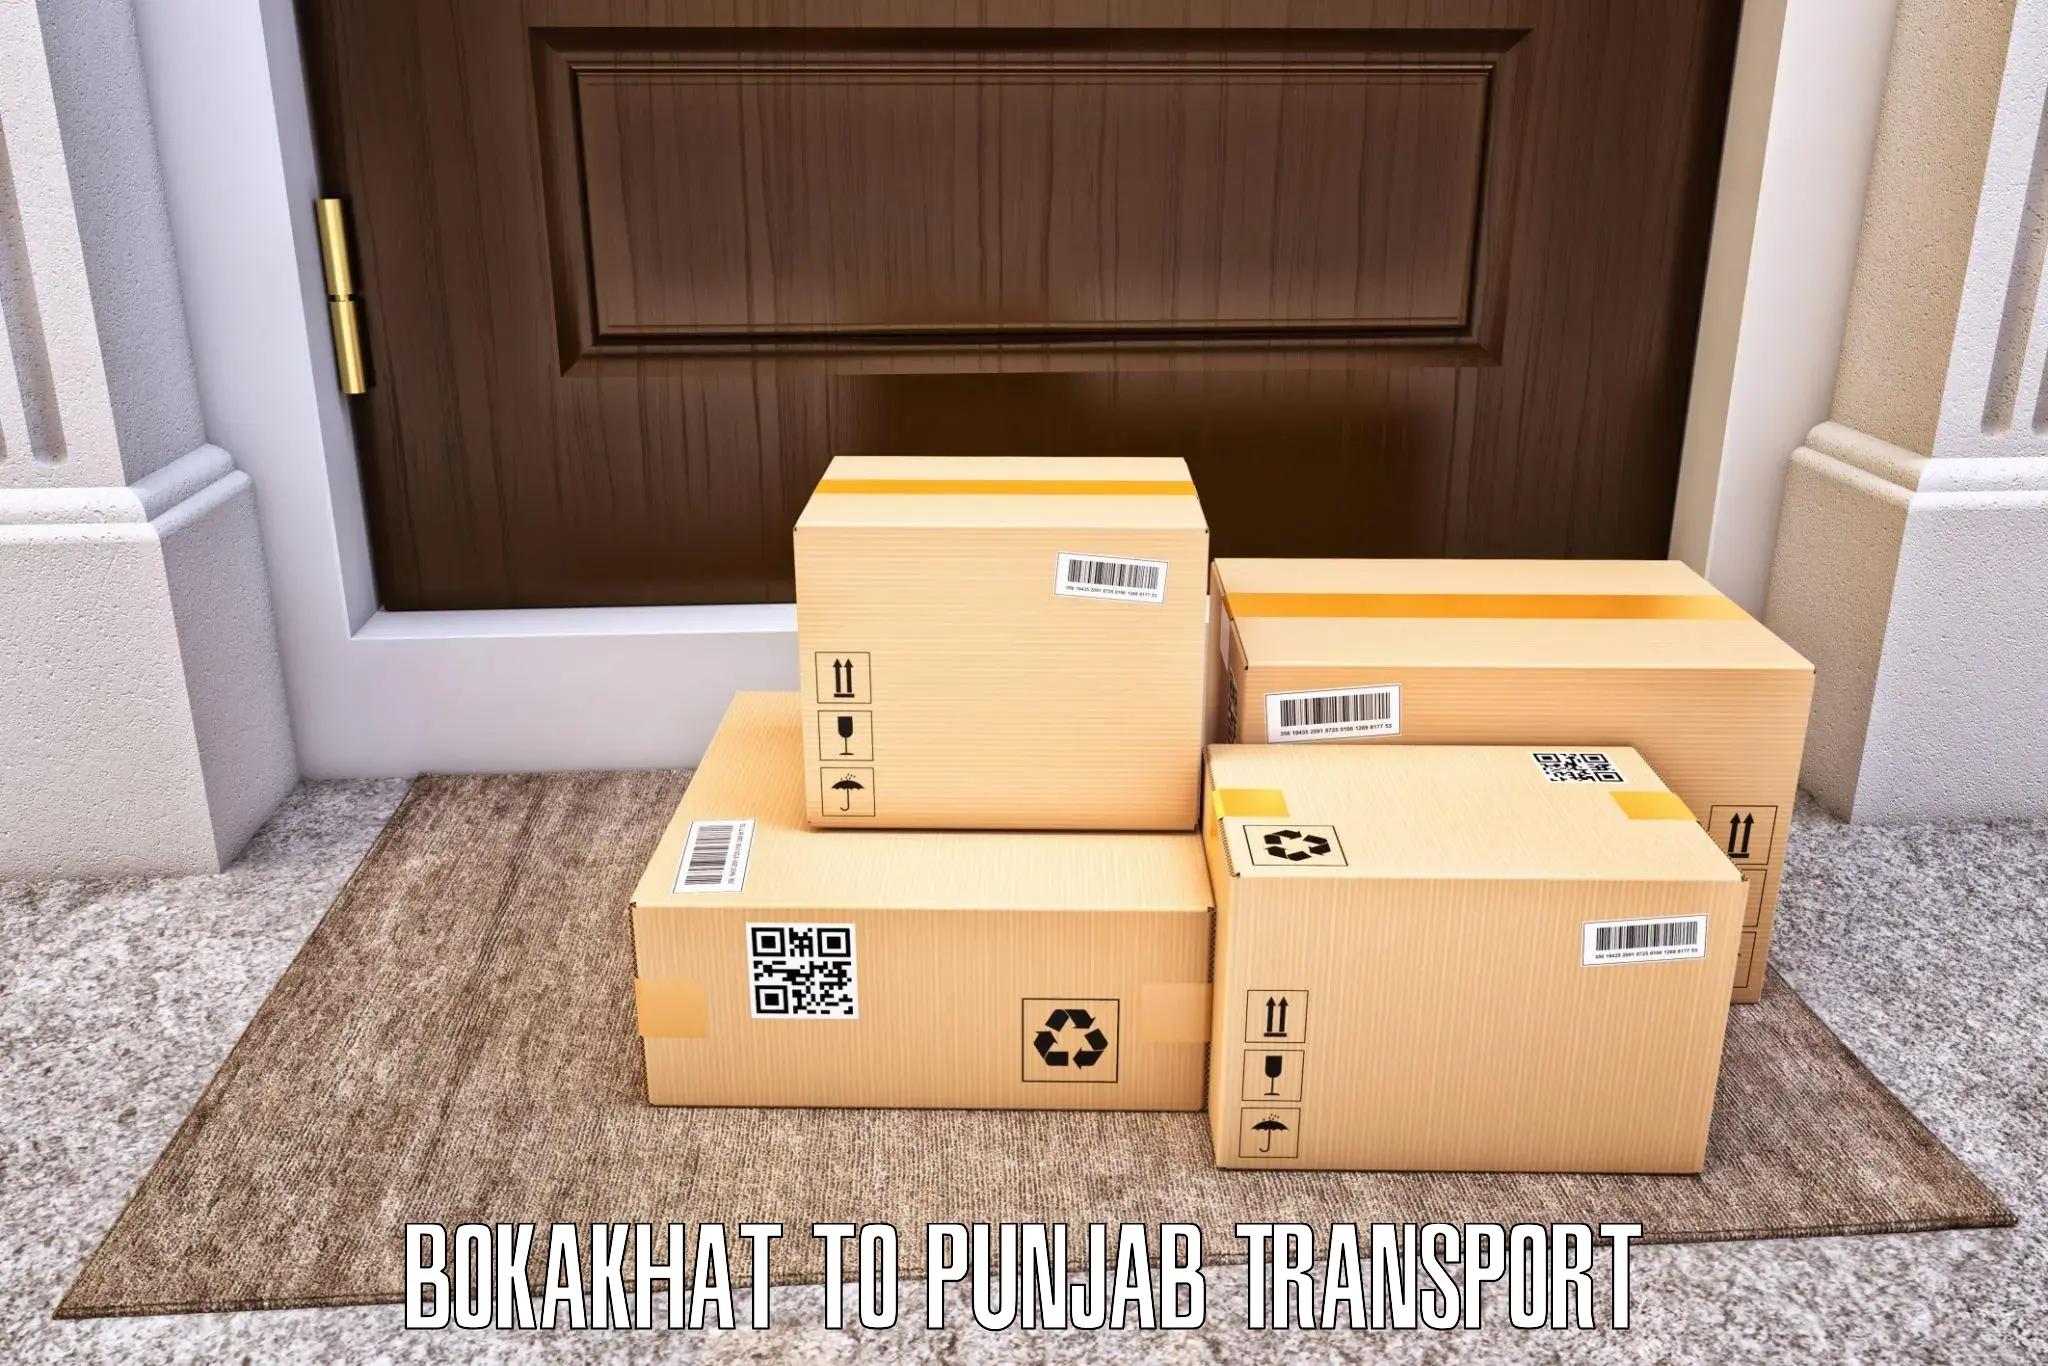 Cargo transportation services Bokakhat to Sunam